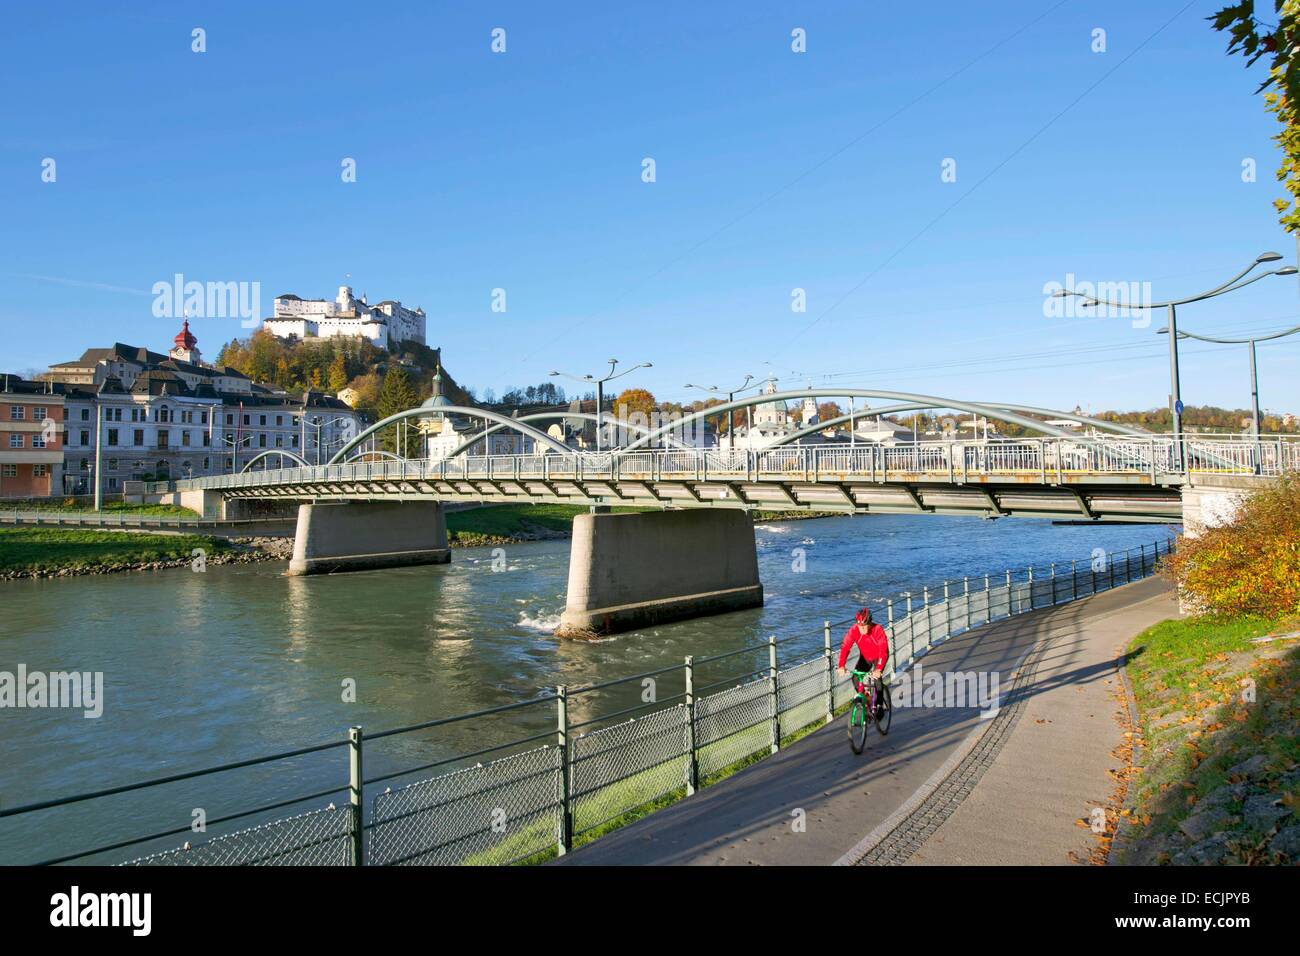 Autriche, Salzbourg, le centre historique classé au Patrimoine Mondial par l'UNESCO, la vieille ville avec la rivière Salzach banques et Château de Hohensalzburg Banque D'Images